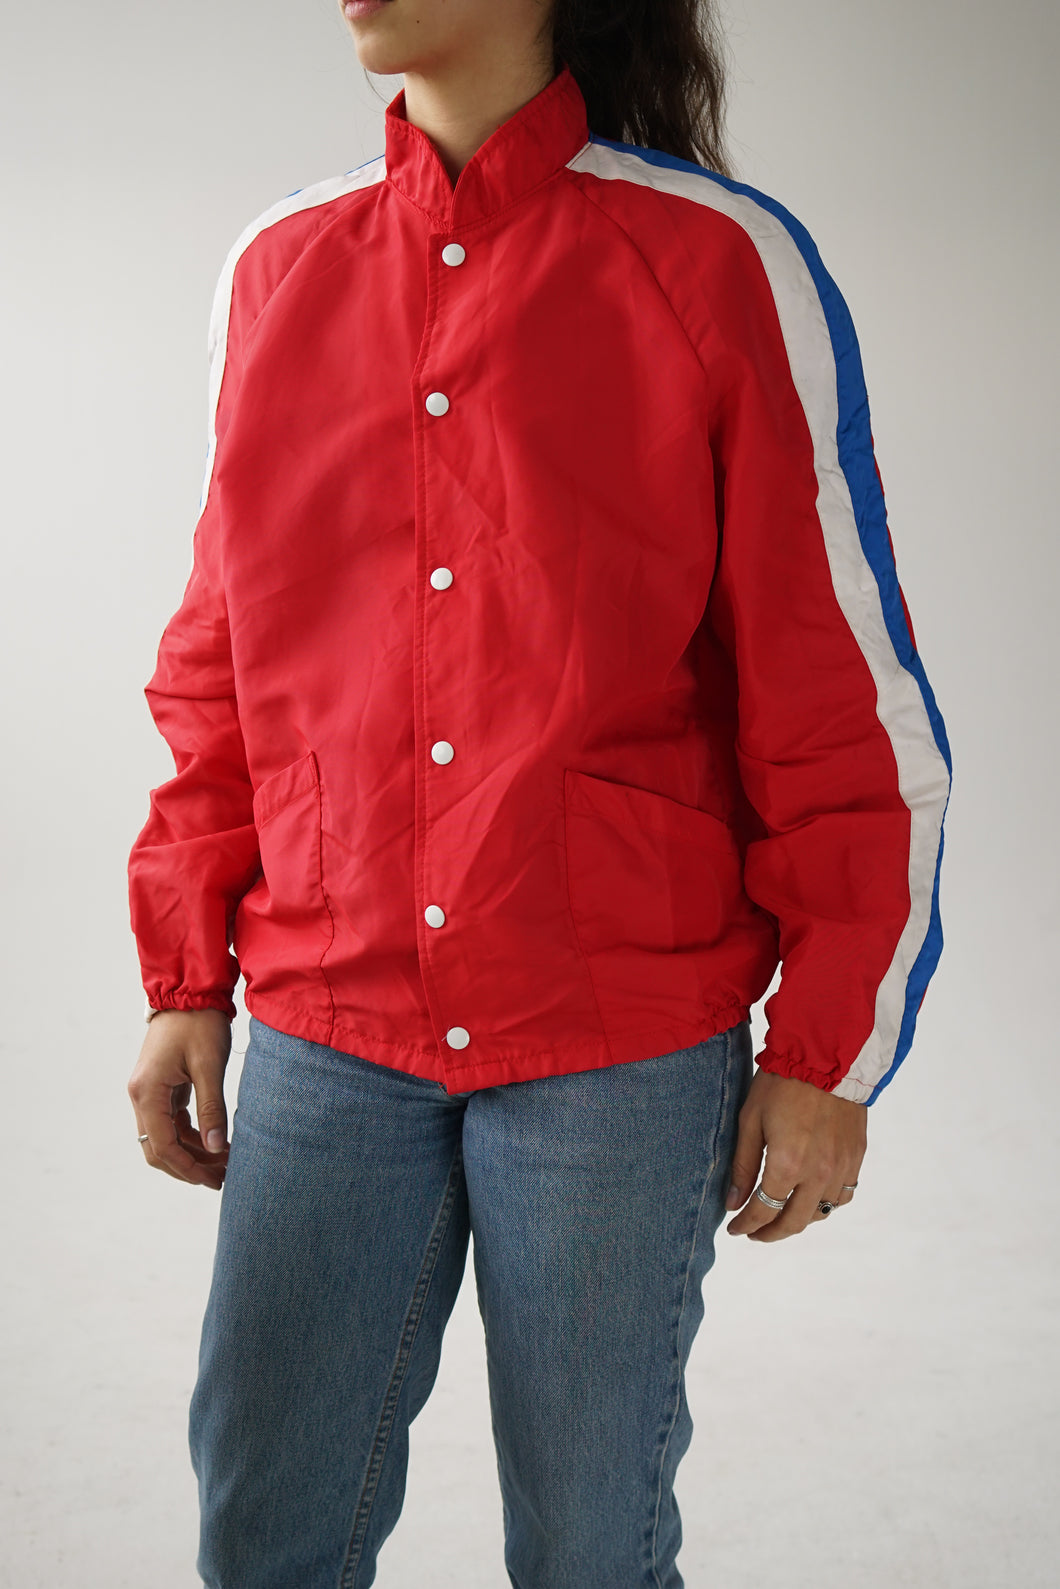 Vintage 70s light jacket in red